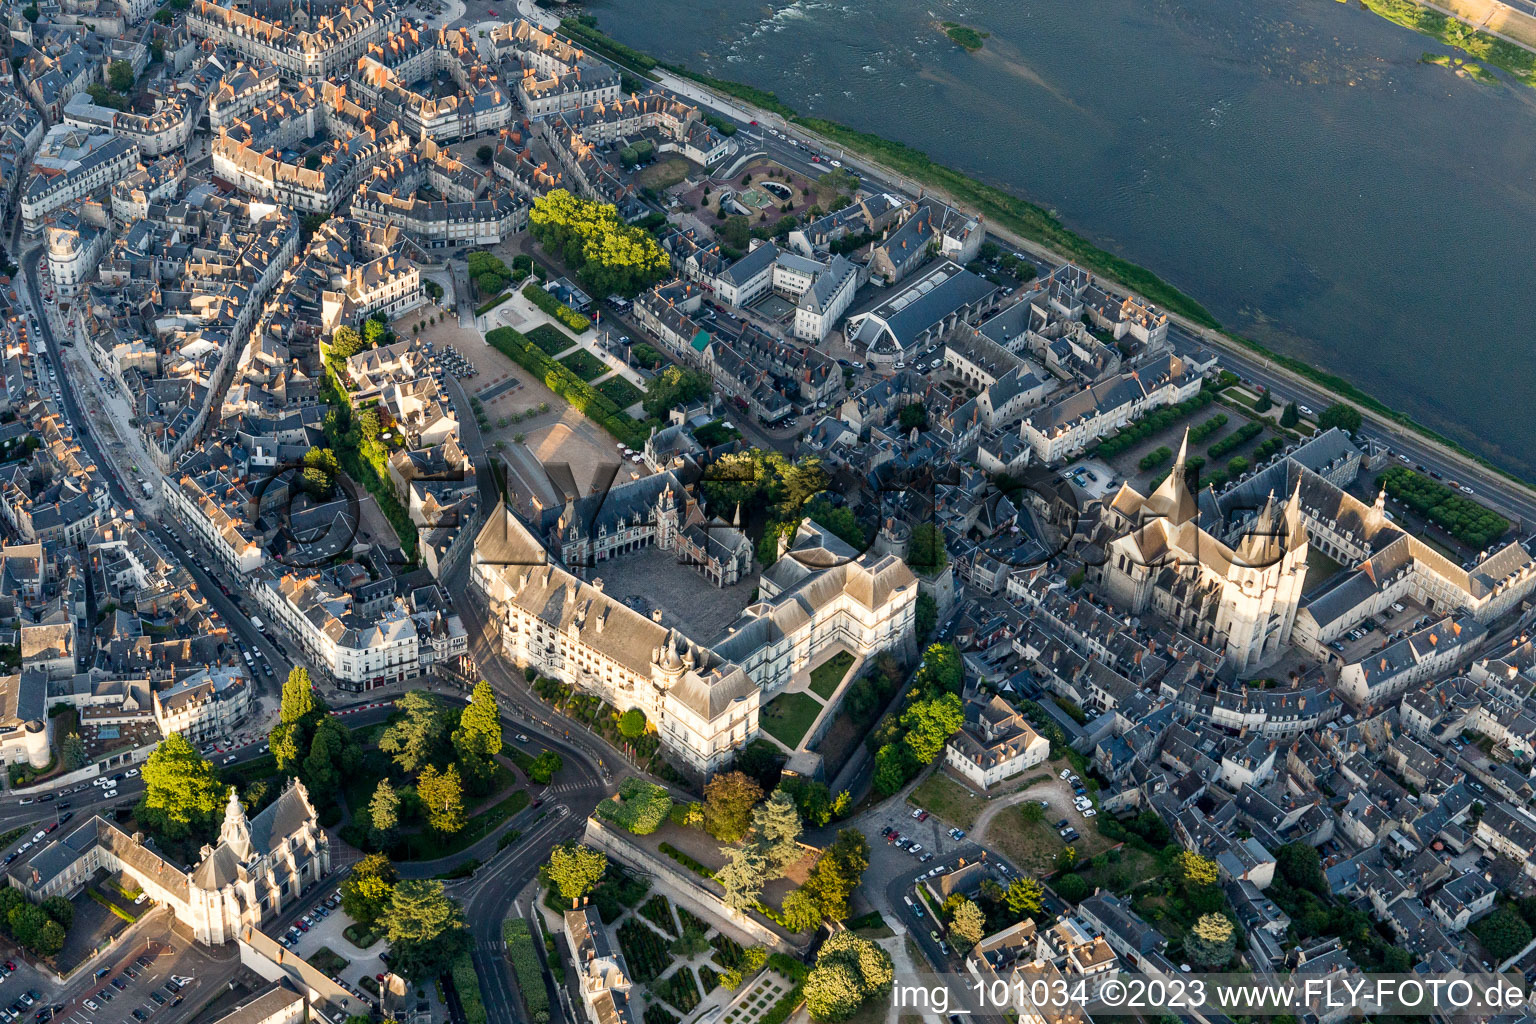 Blois dans le département Loir et Cher, France vue d'en haut